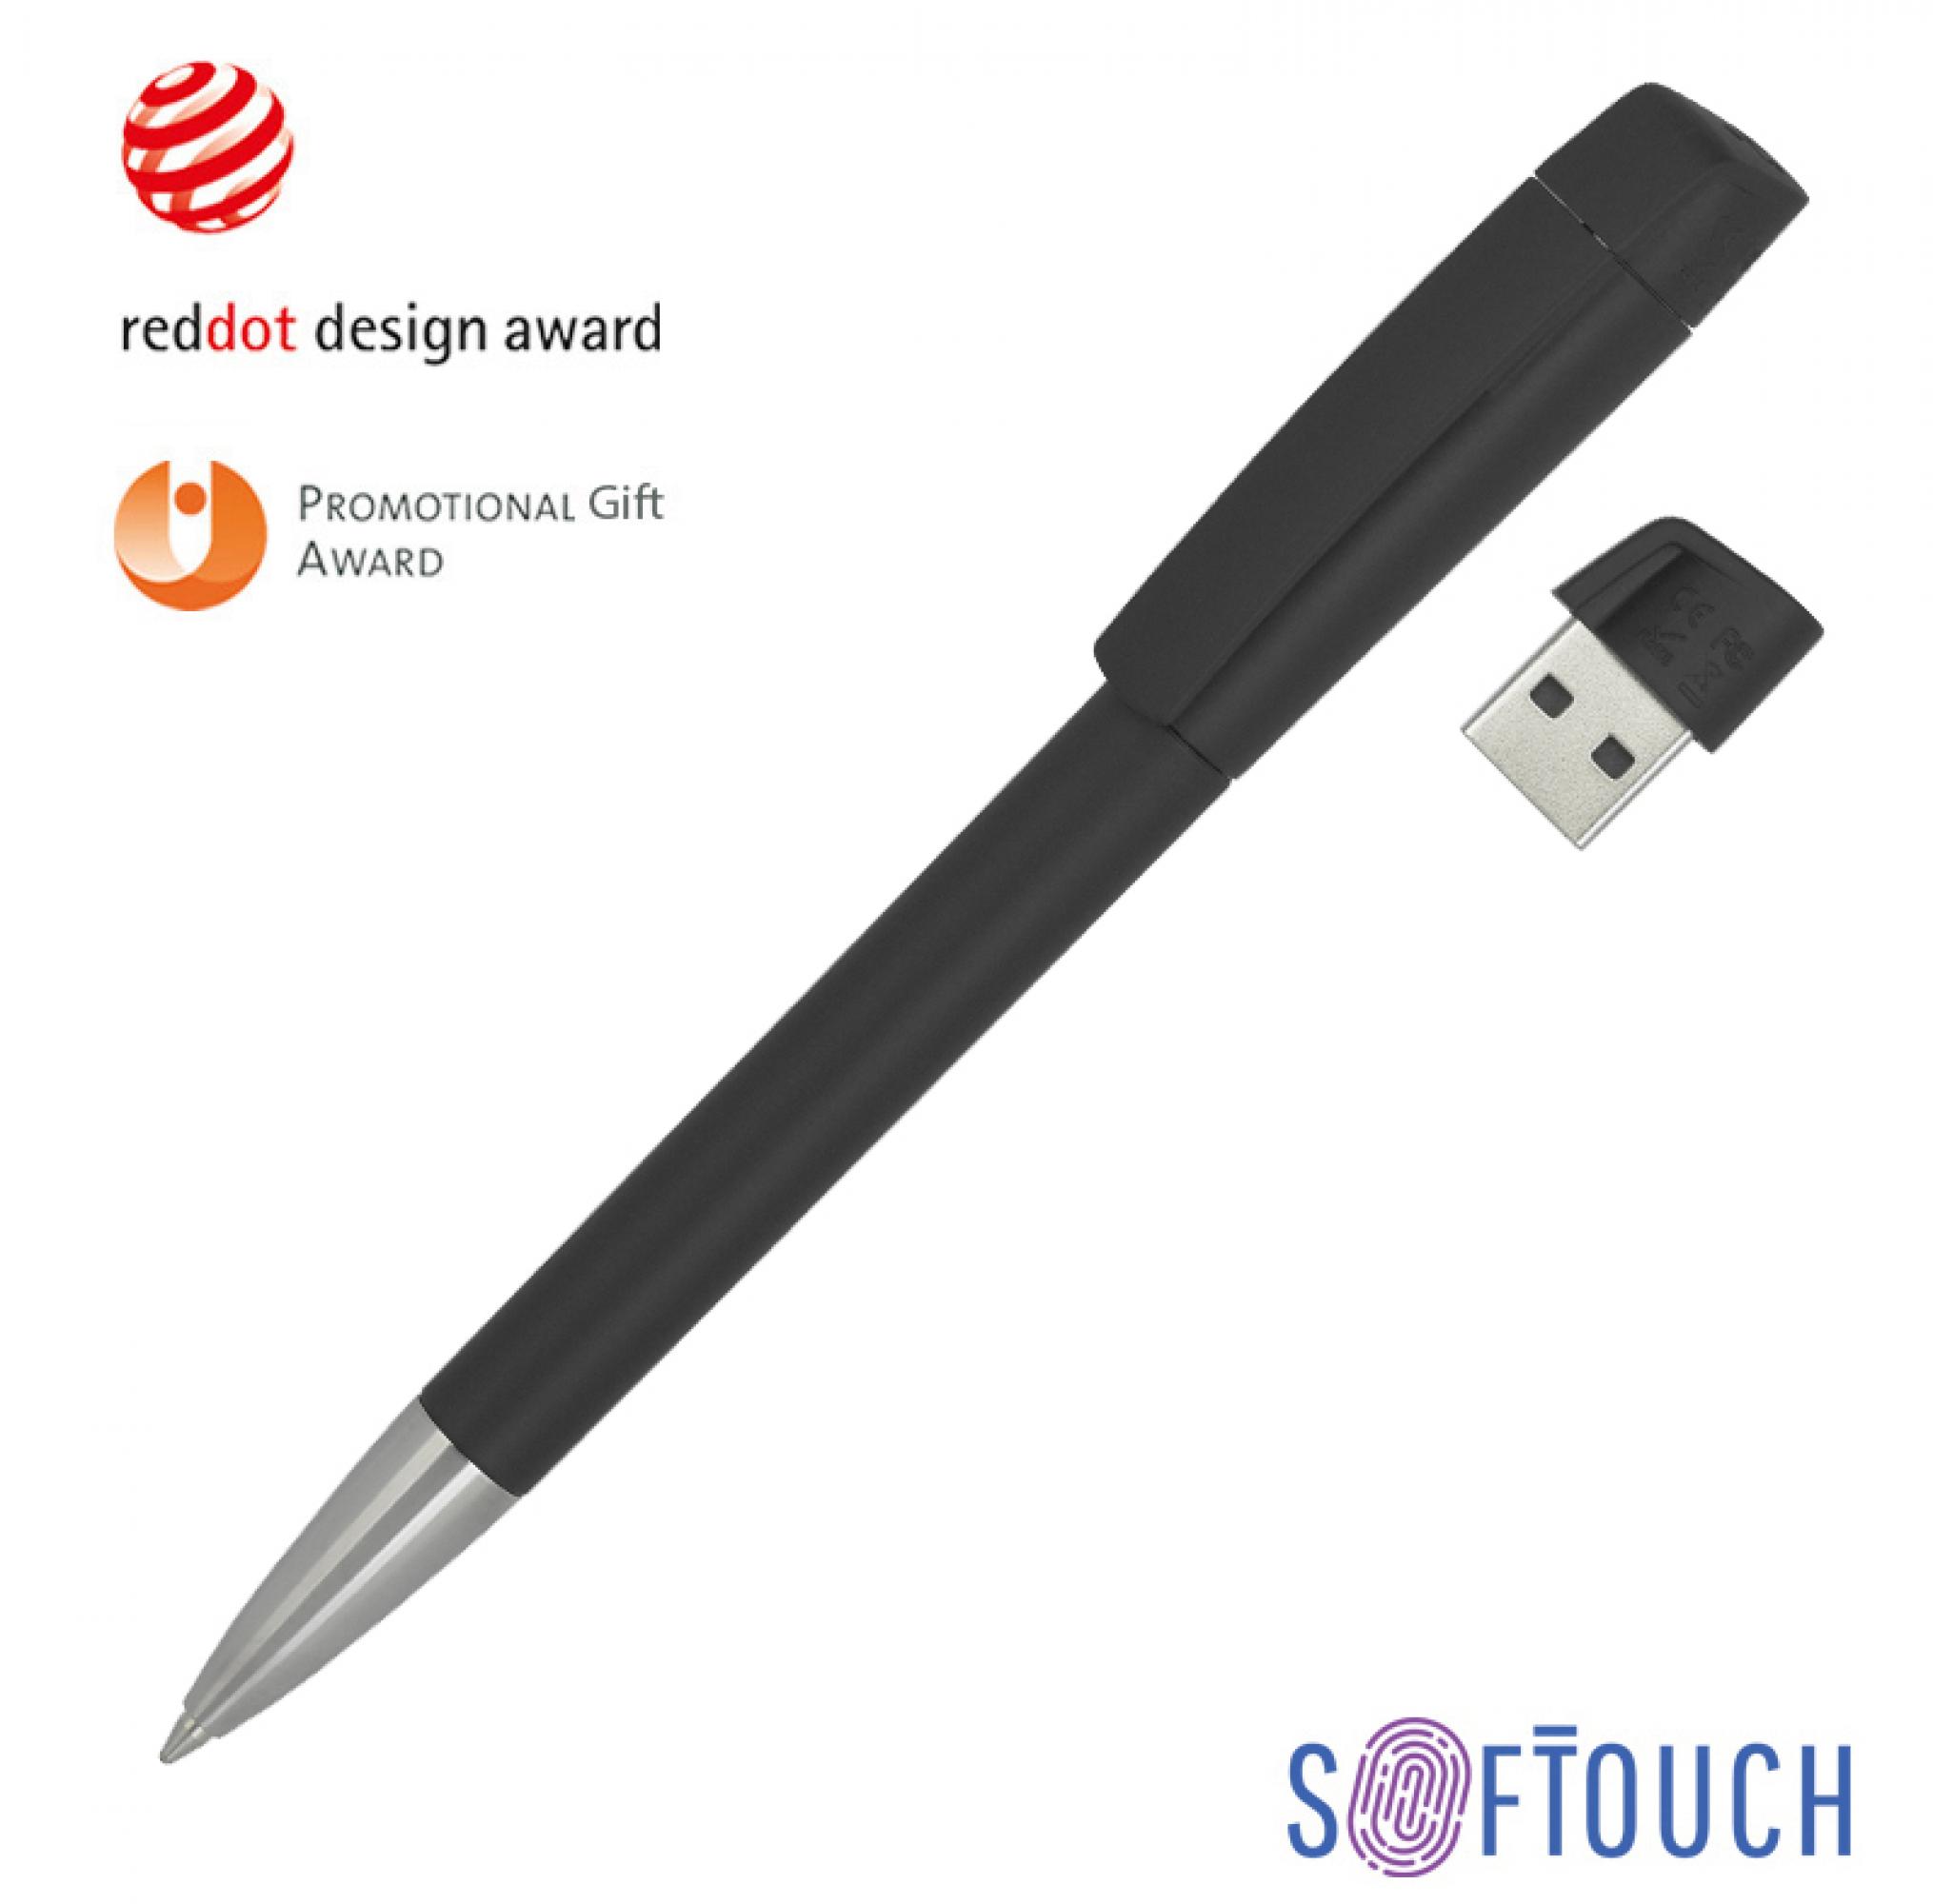 Ручка с флеш-картой USB 8GB «TURNUSsoftgrip M», цвет оранжевый - купить оптом